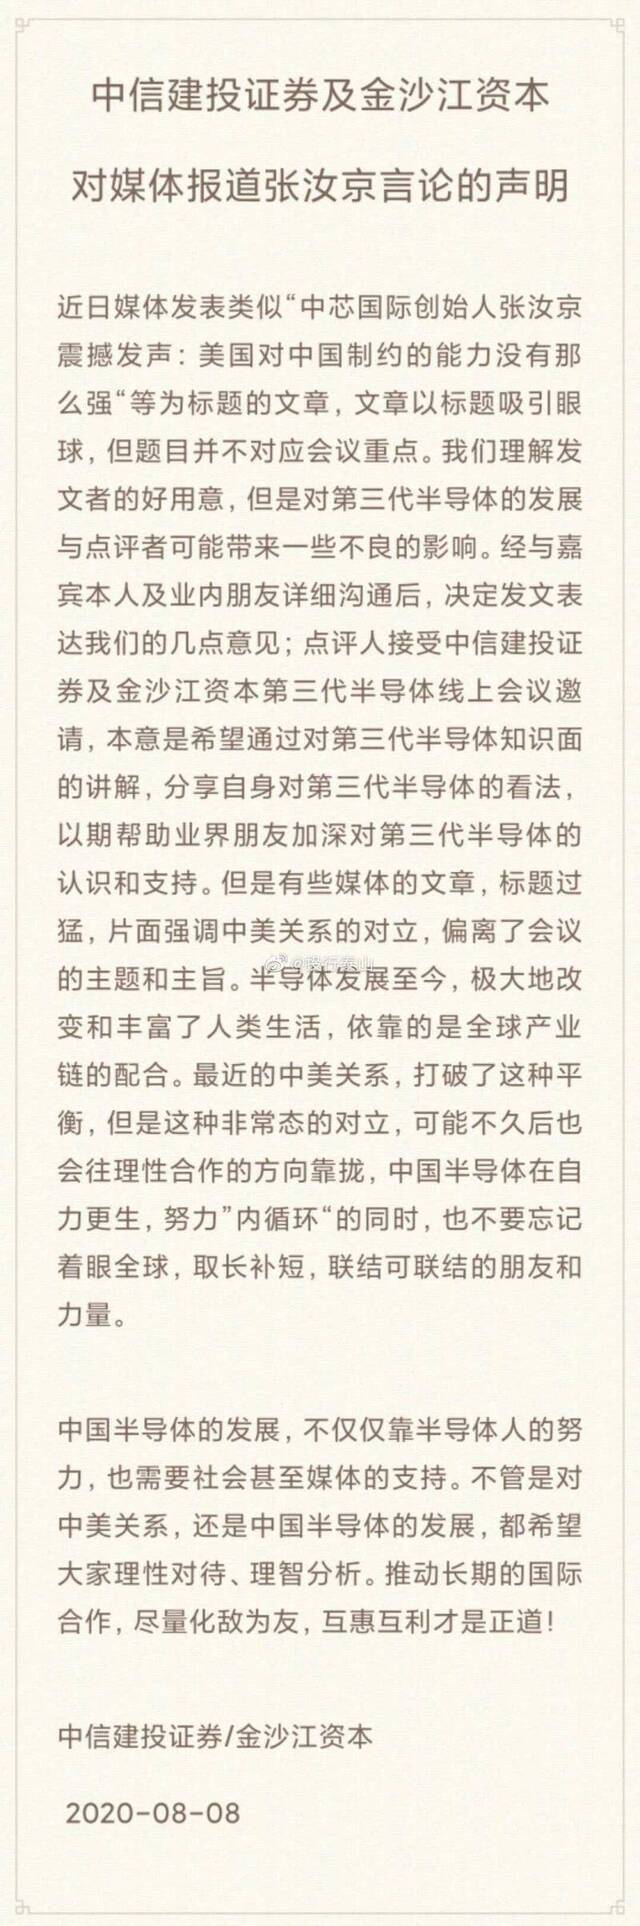 媒体称“张汝京:美国对中国制约力不强” 主办方回应